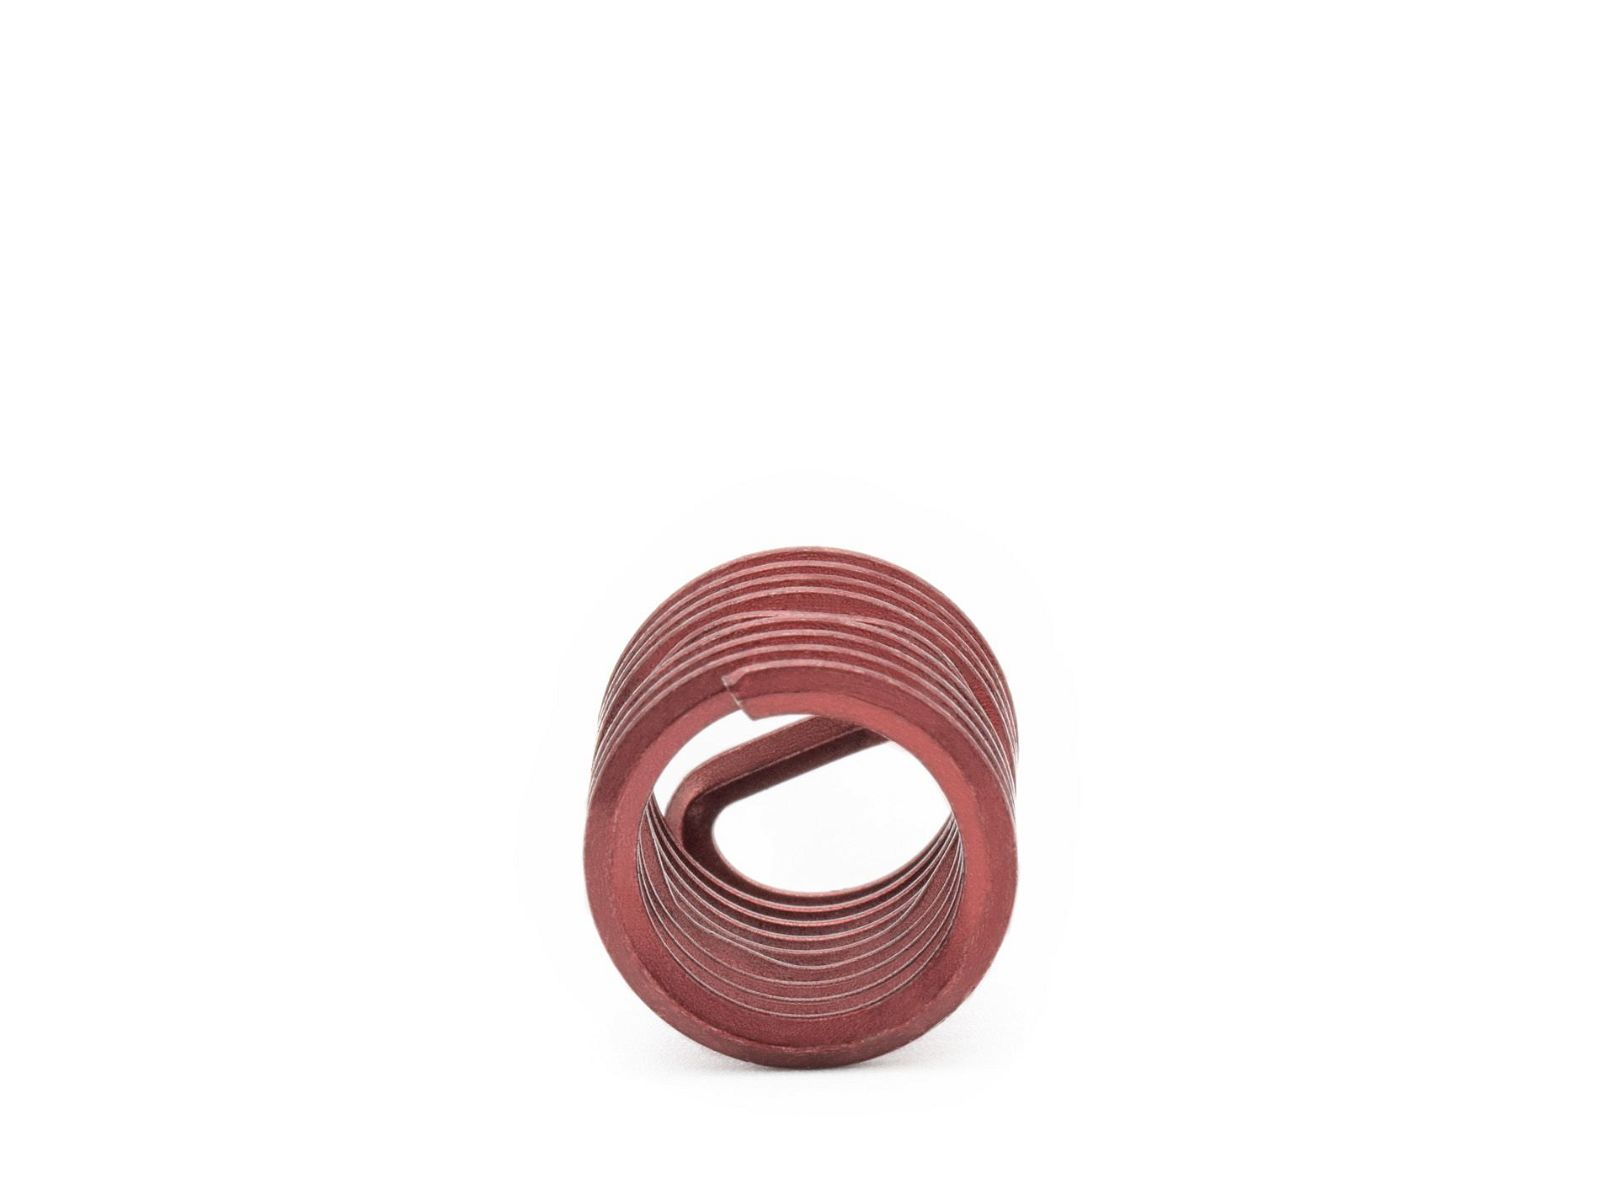 BaerCoil Wire Thread Inserts M 12 x 1.5 - 1.5 D (18 mm) - screw grip (screw locking) - 100 pcs.